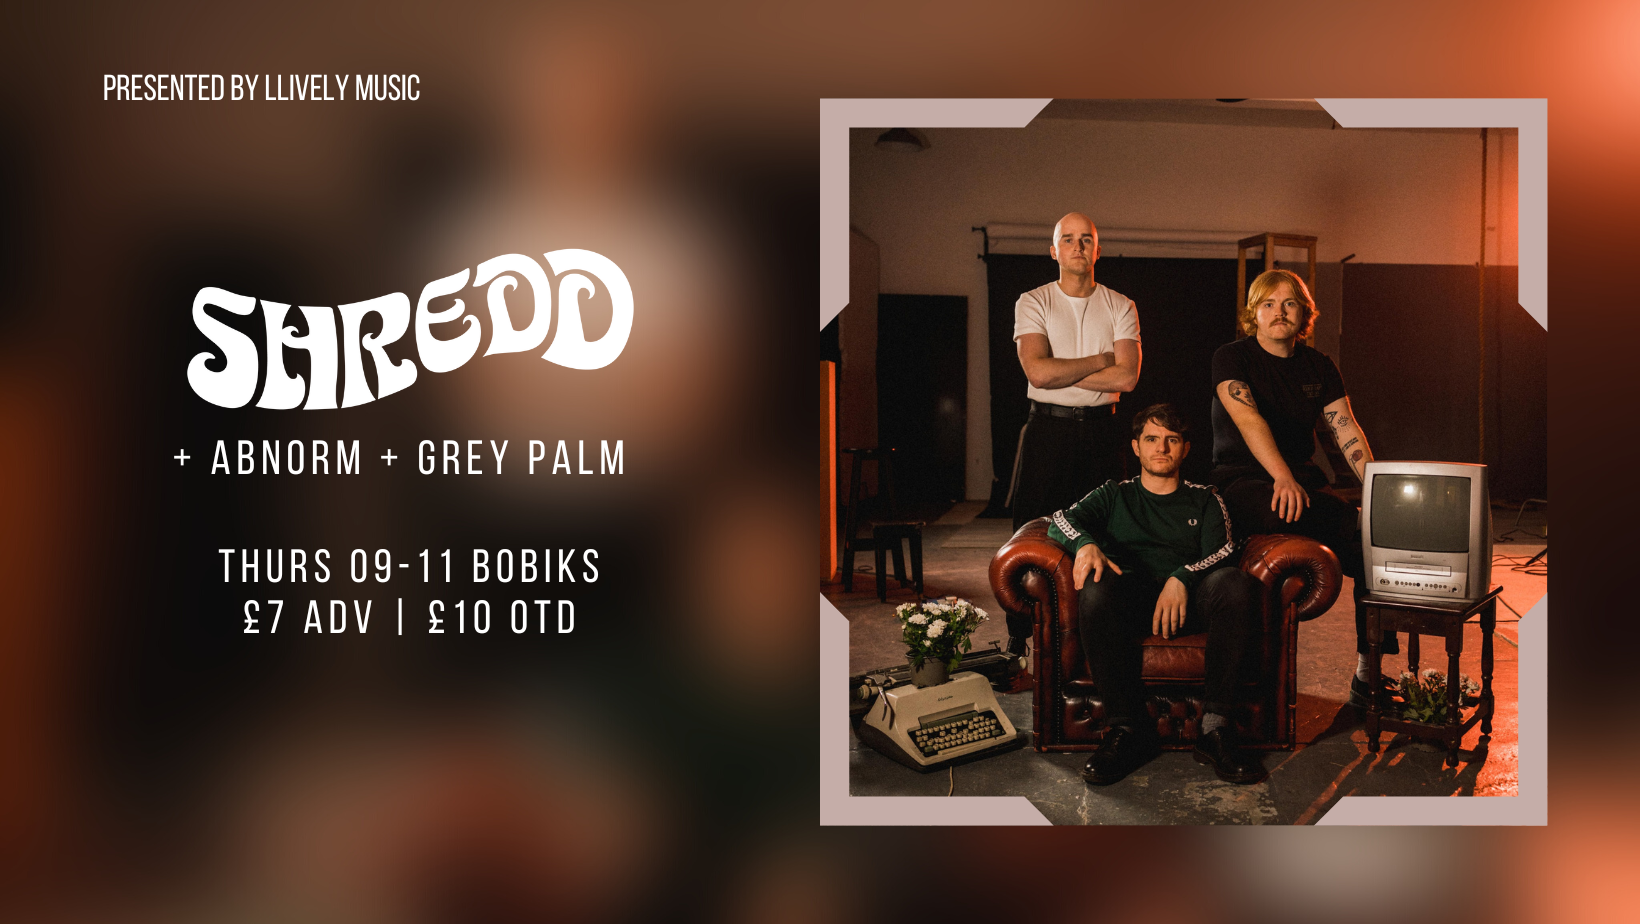 Shredd + Abnorm & Grey Palm